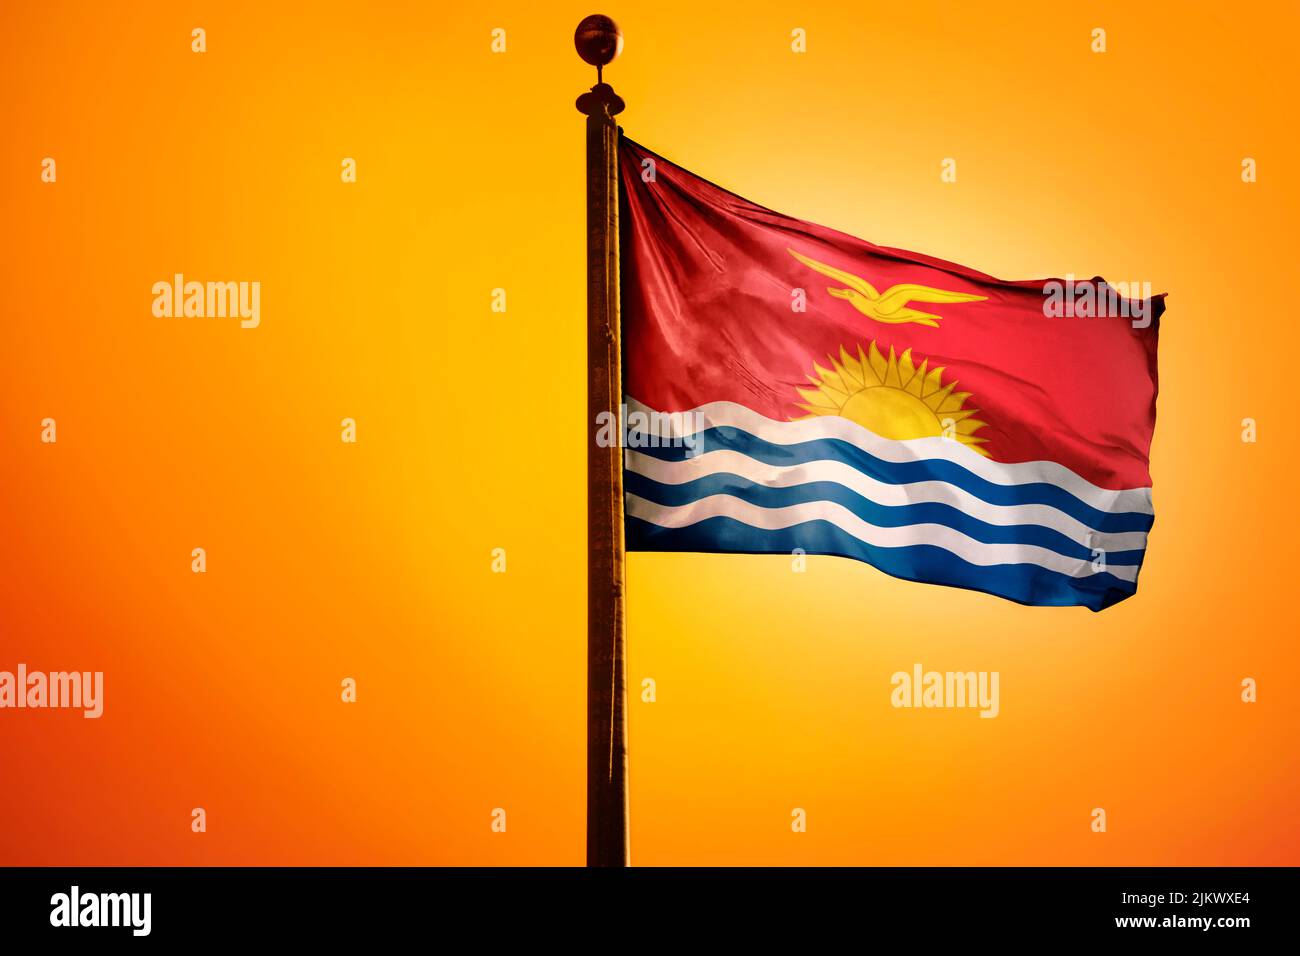 The national flag of Kiribati on a flagpole isolated on an orange background Stock Photo